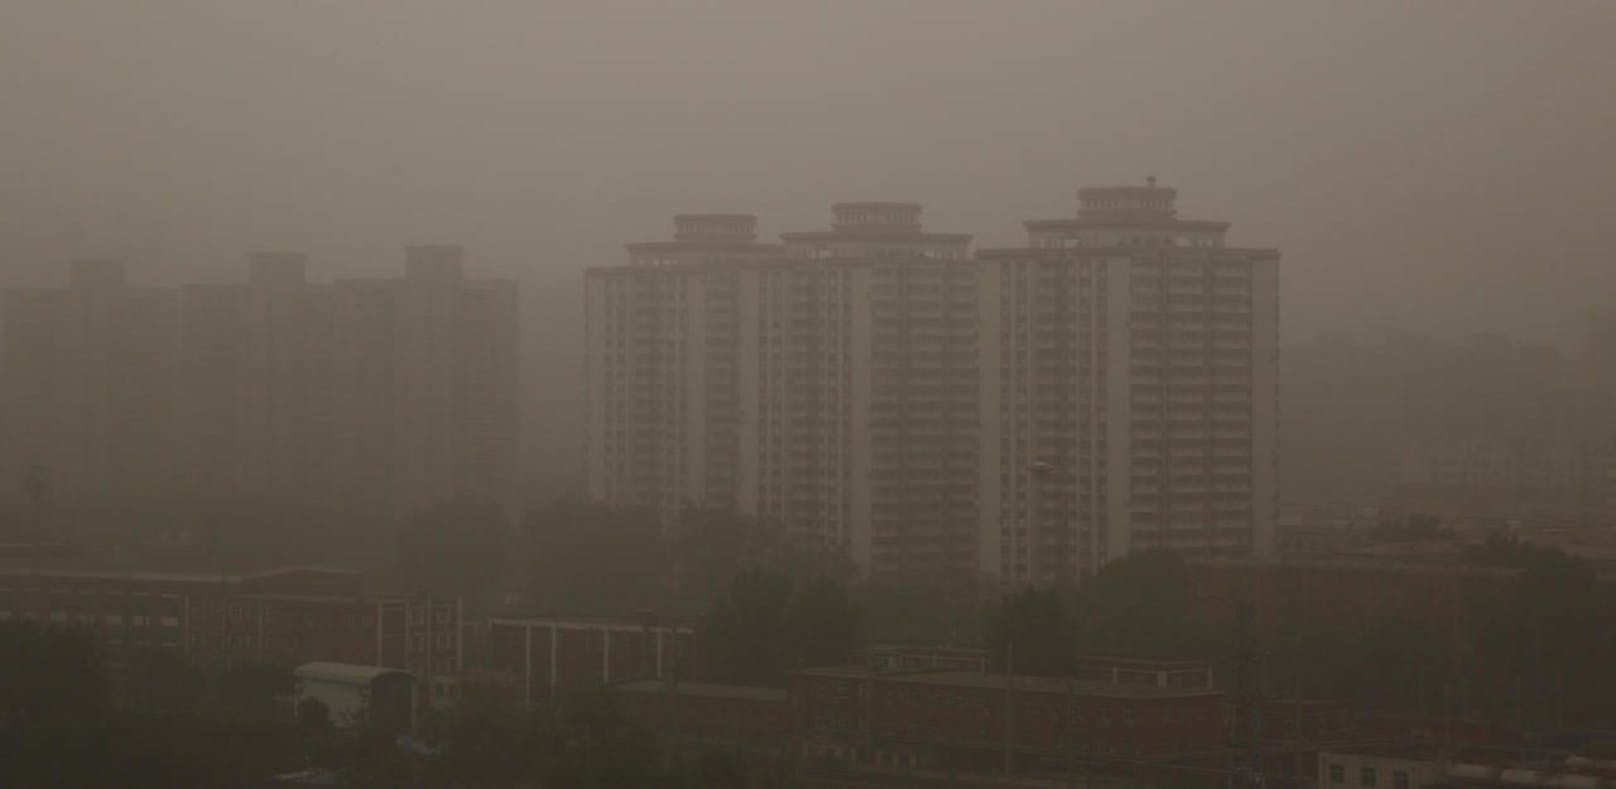 Bei Smog ist Peking kaum zu sehen. Luftverschmutzung ist nicht nur unschön mitanzusehen, sondern beeinflusst auch Körper und Psyche: Viele Menschen werden in einer solchen Umgebung ängstlicher, was sie unmoralischer handeln lässt.